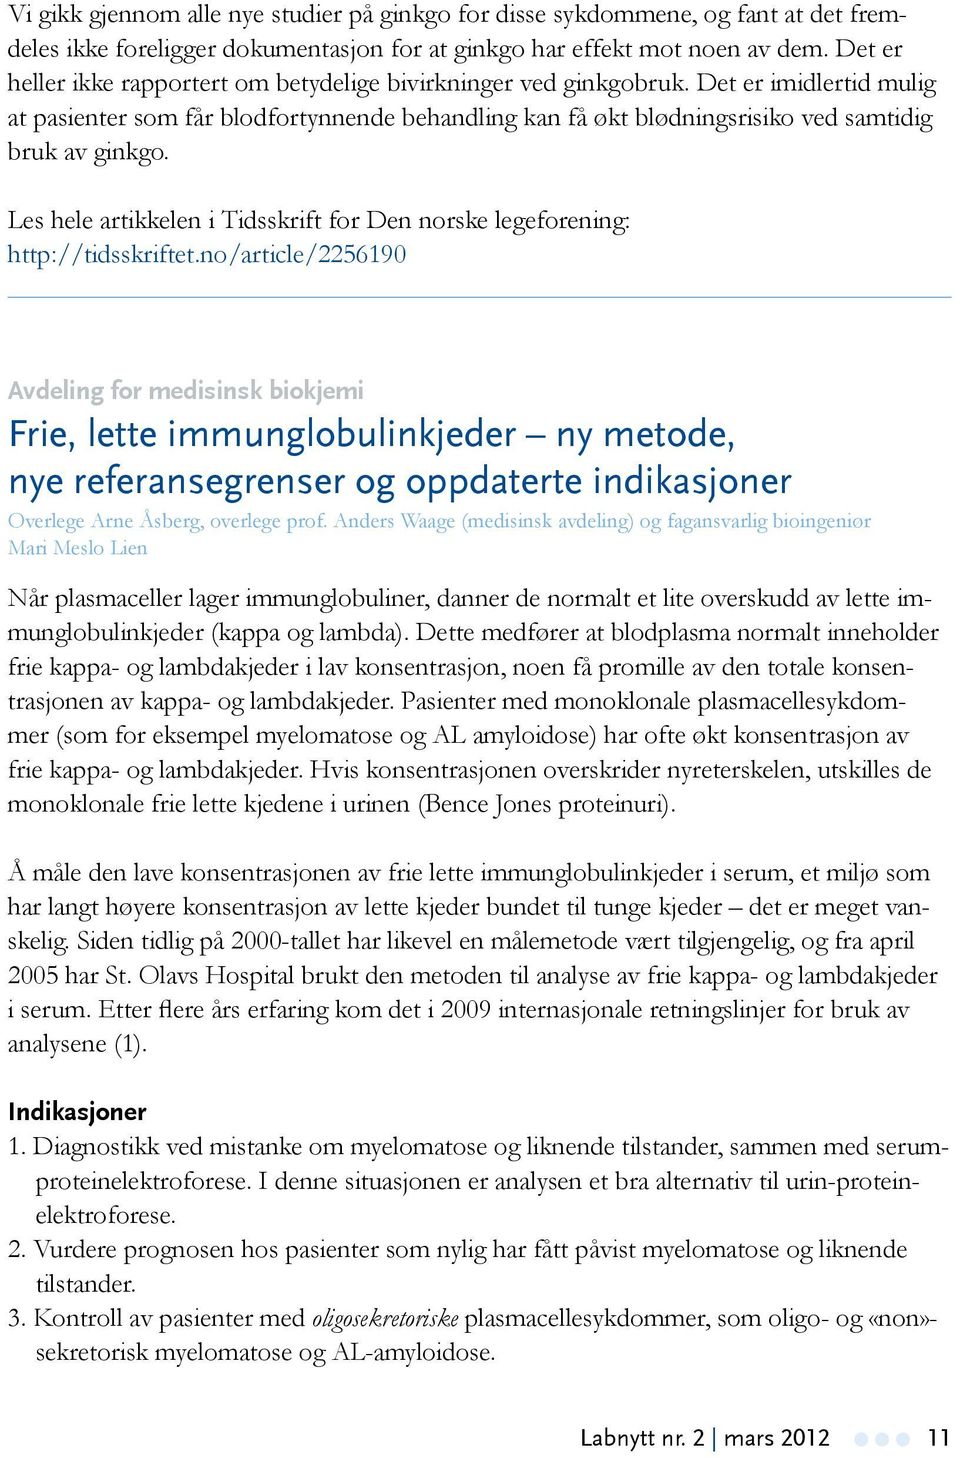 Les hele artikkelen i Tidsskrift for Den norske legeforening: http://tidsskriftet.